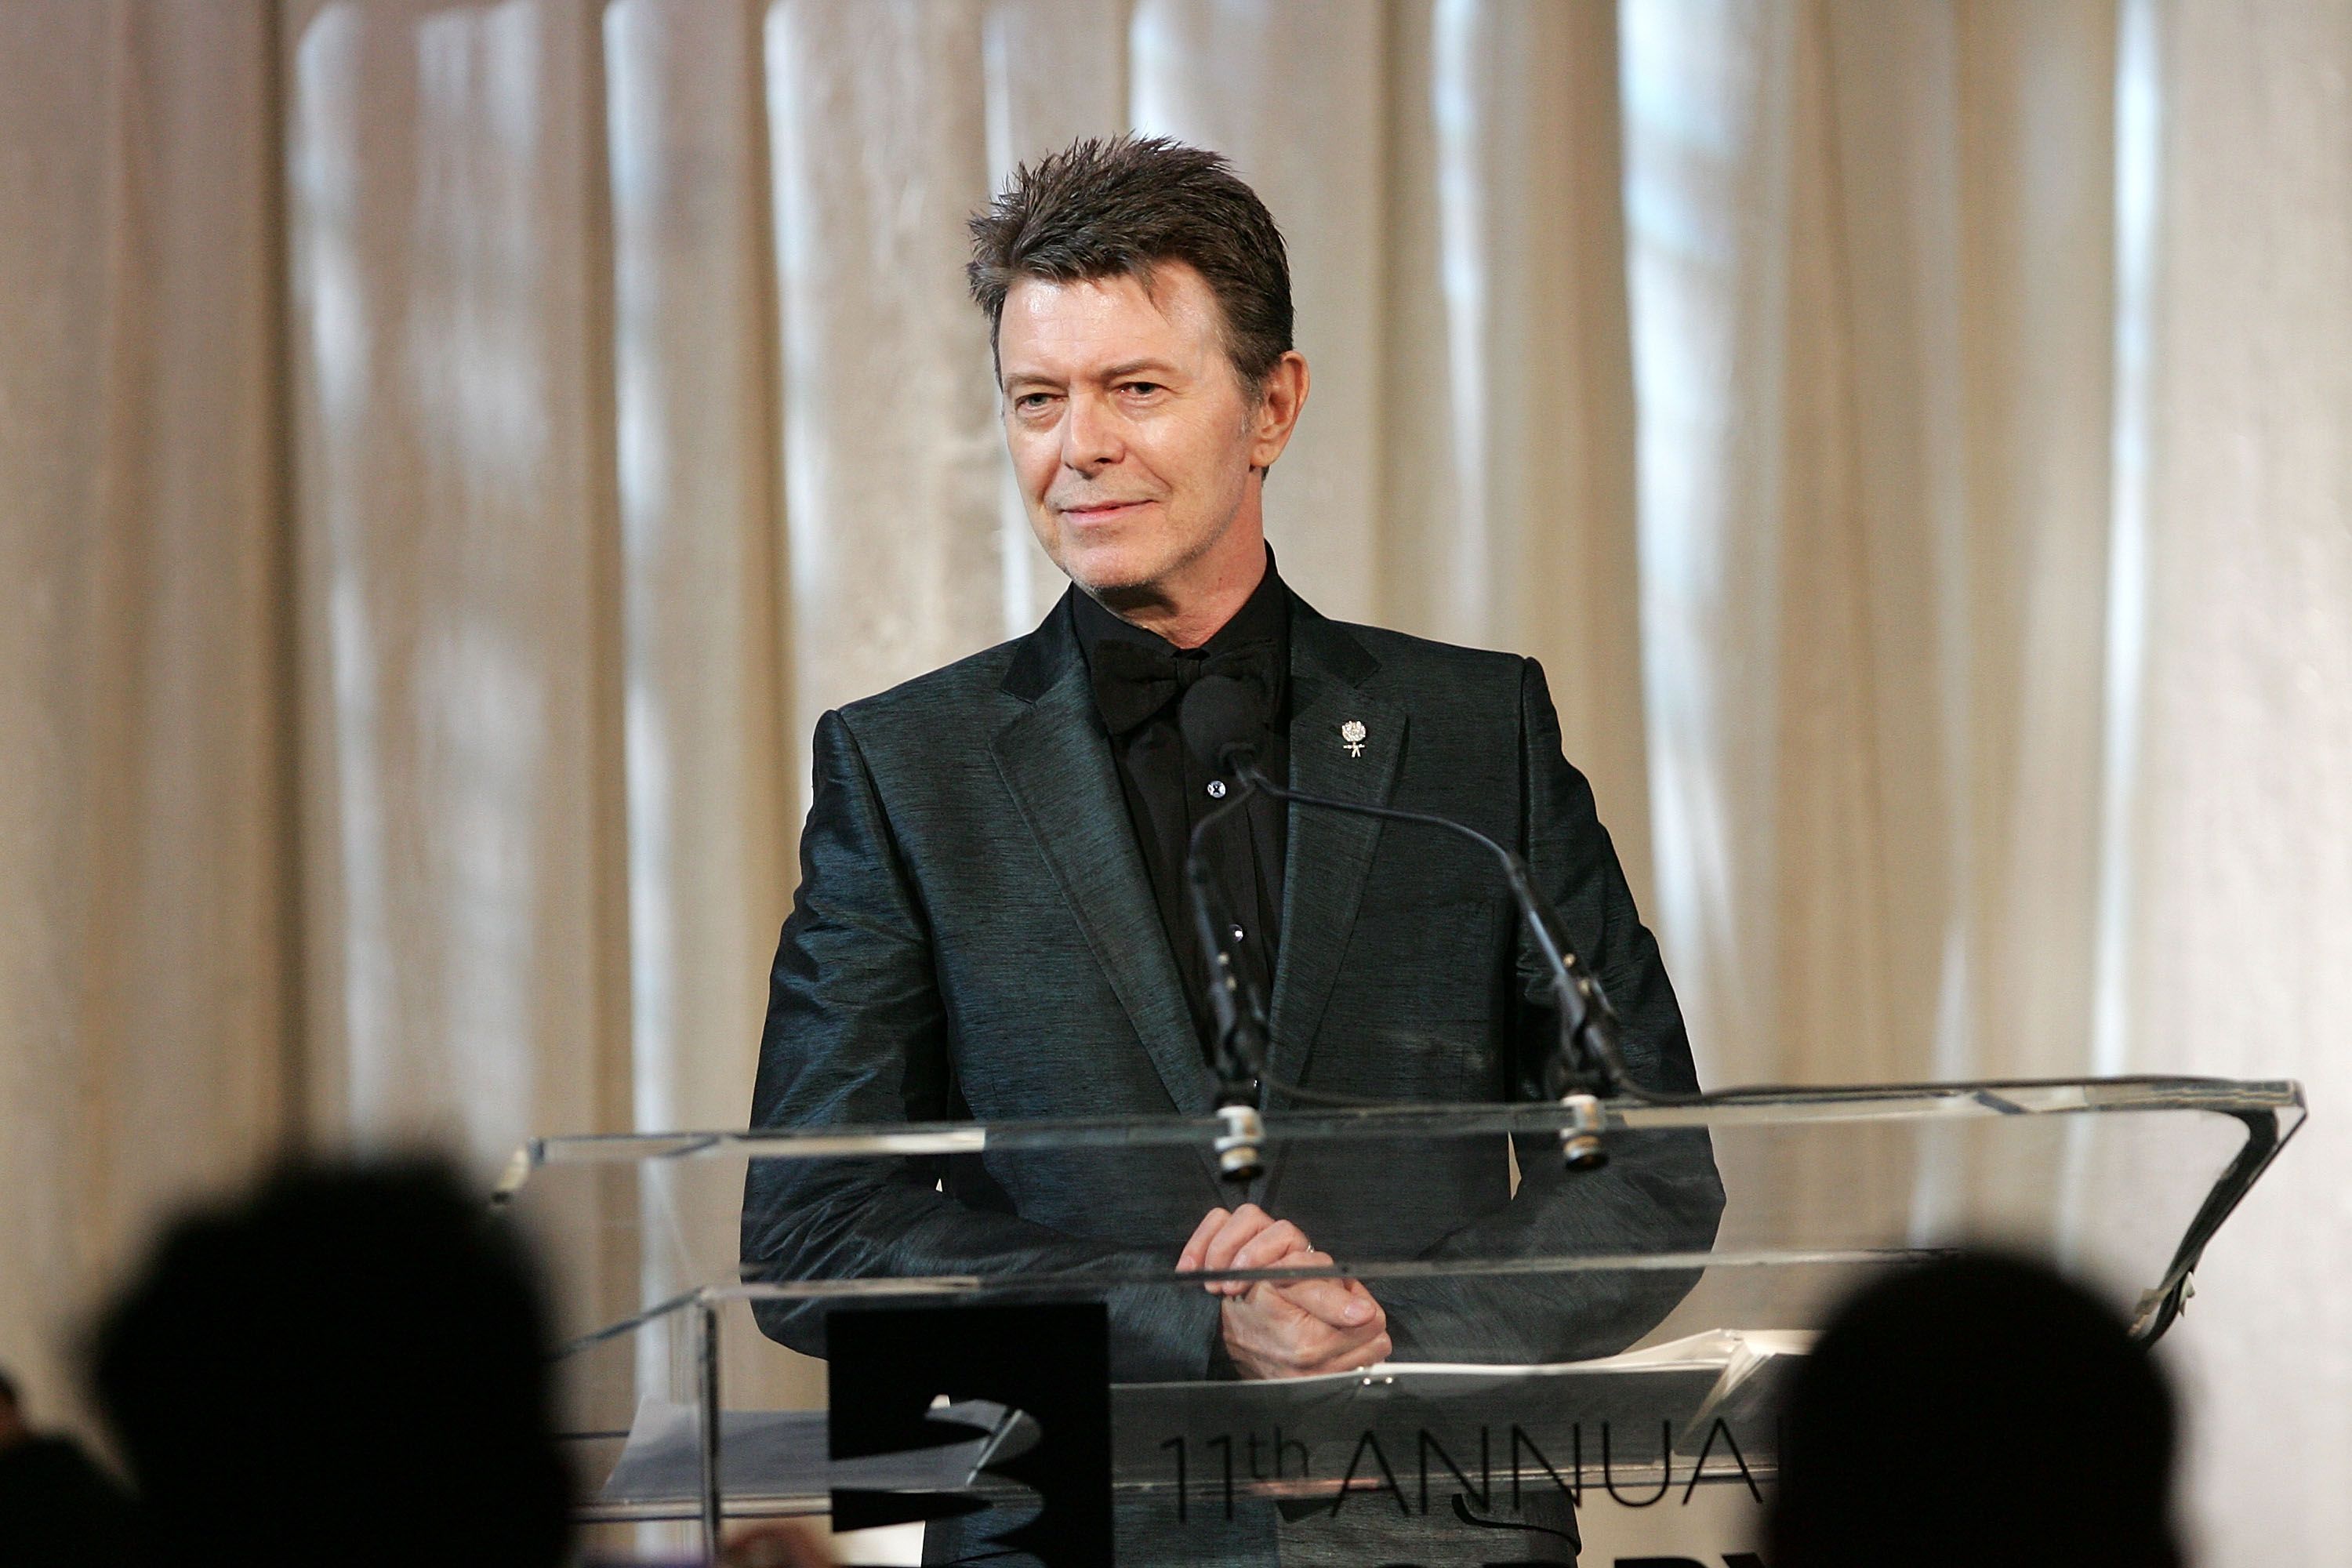 David Bowie aceptando el premio Webby Lifetime Achievement el 5 de junio de 2007 en la ciudad de Nueva York. | Foto: Getty Images